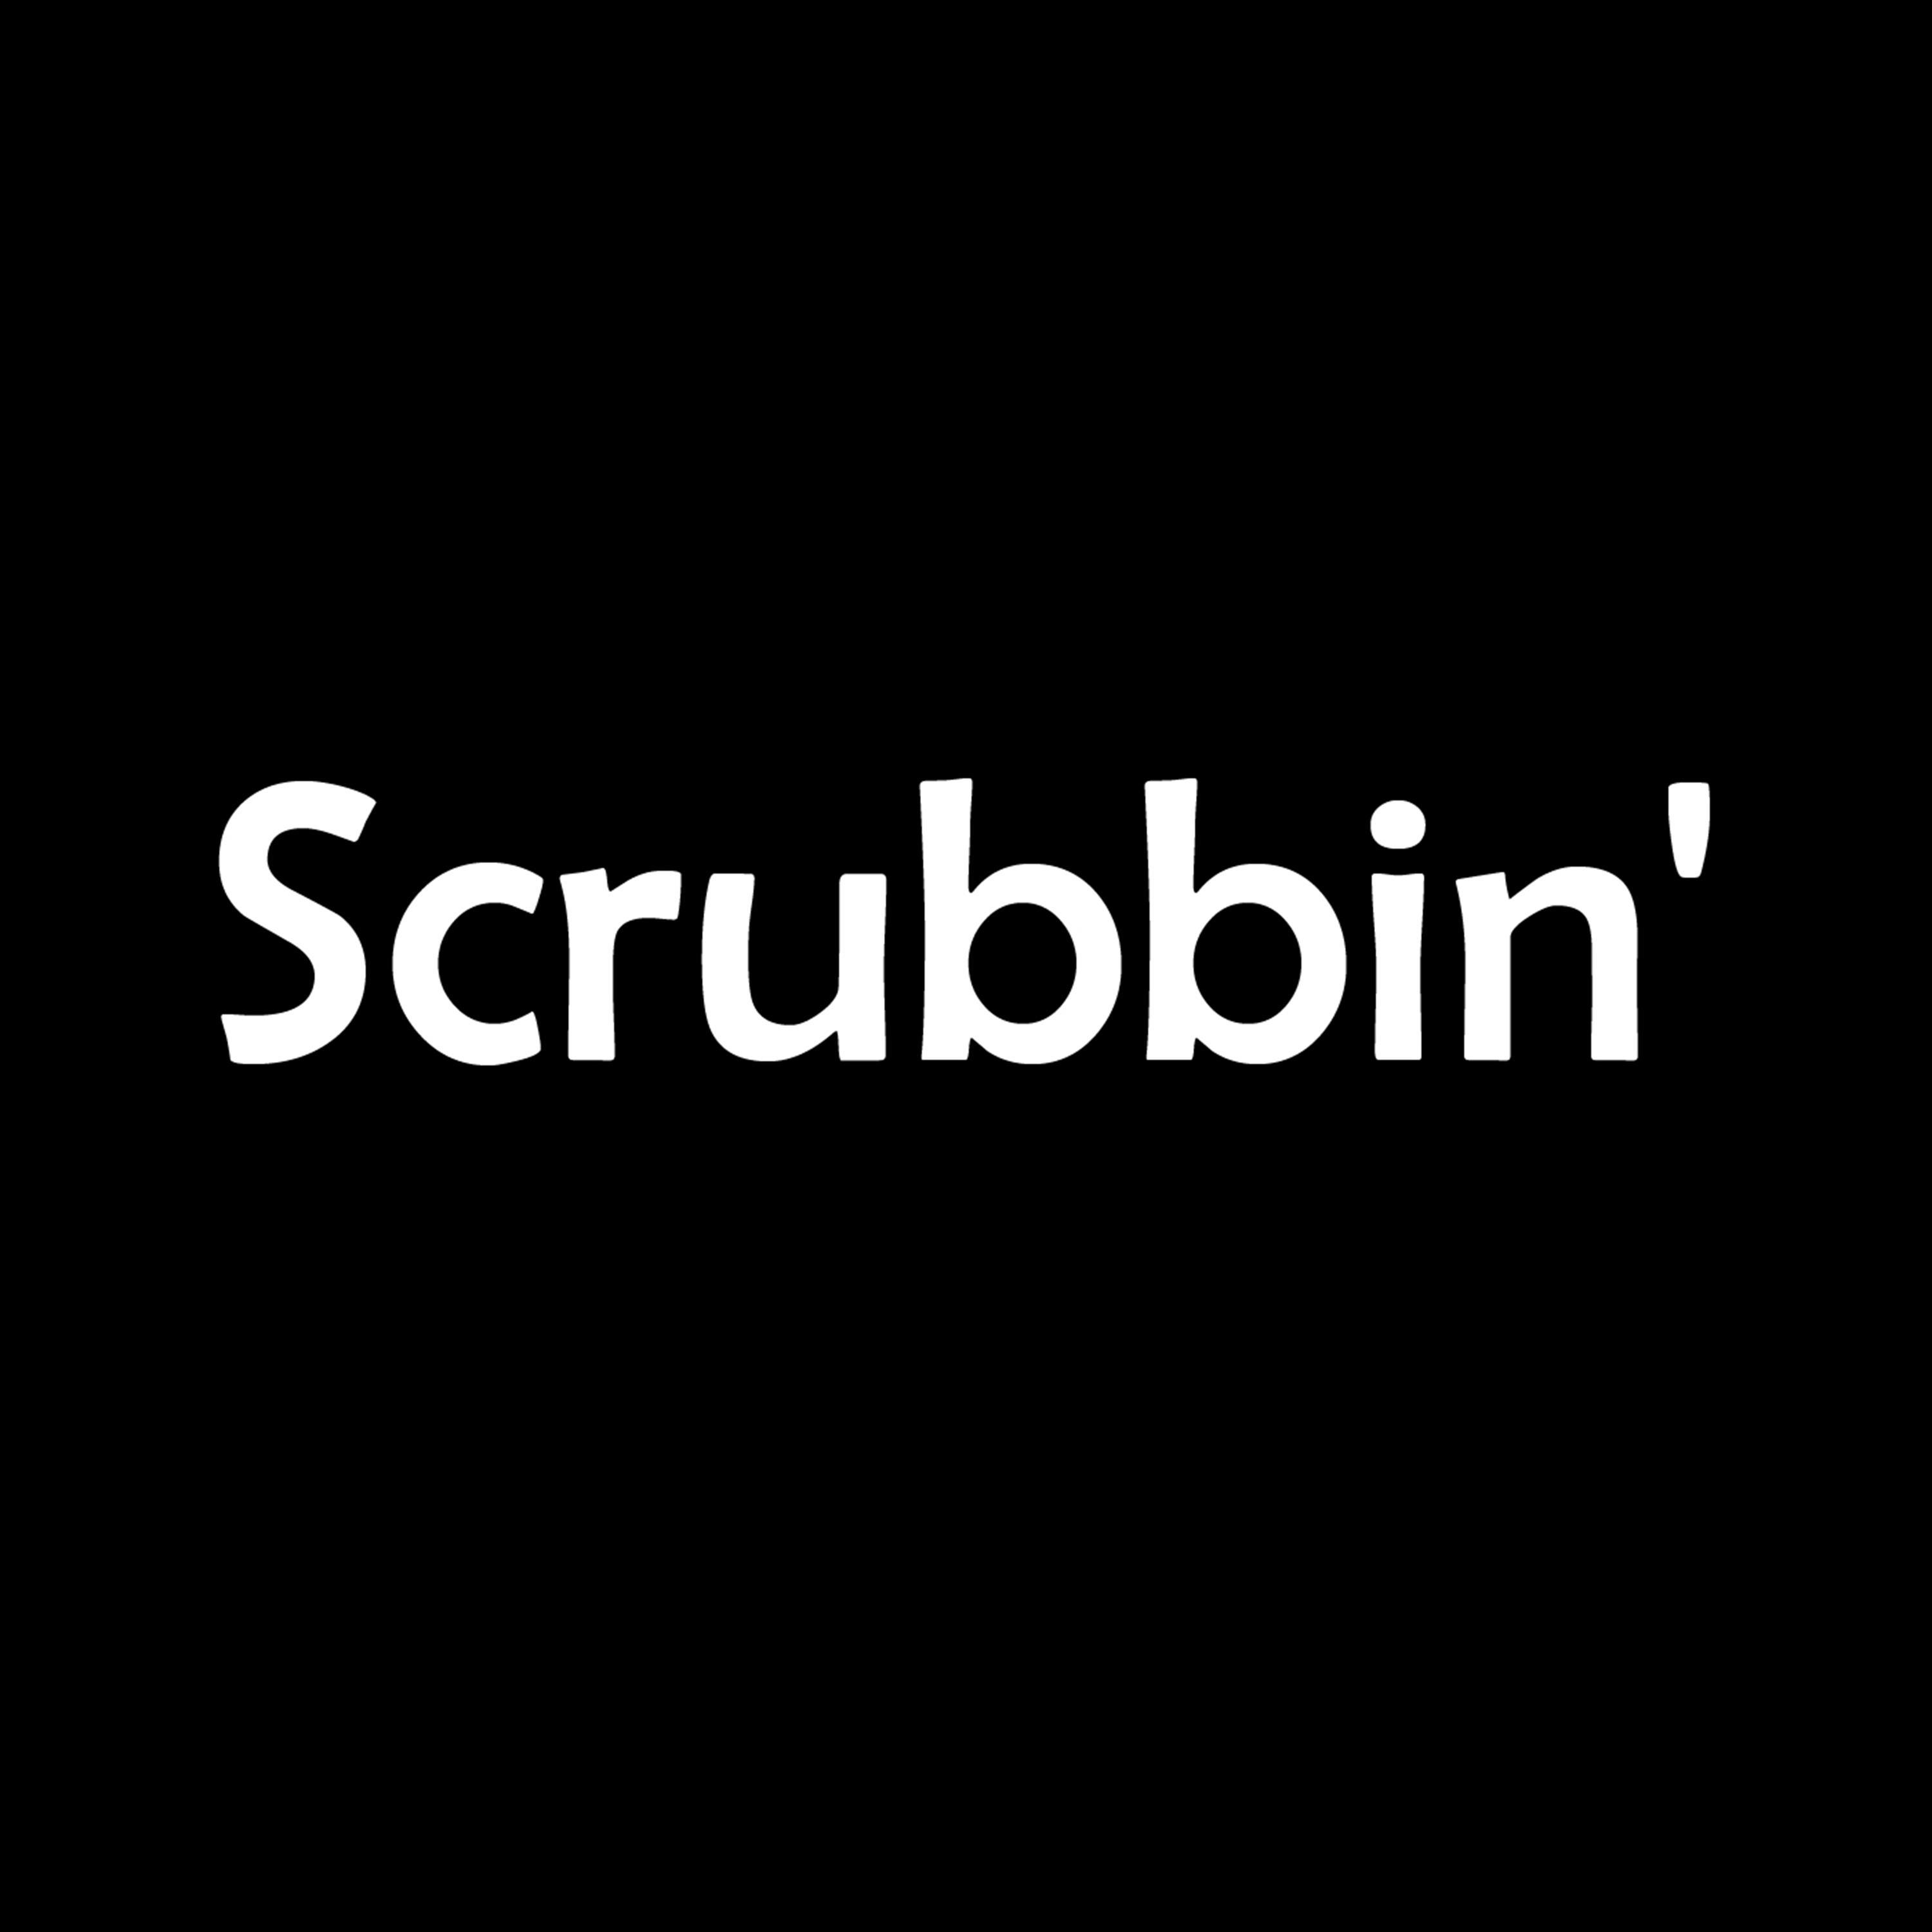 Scrubbin'